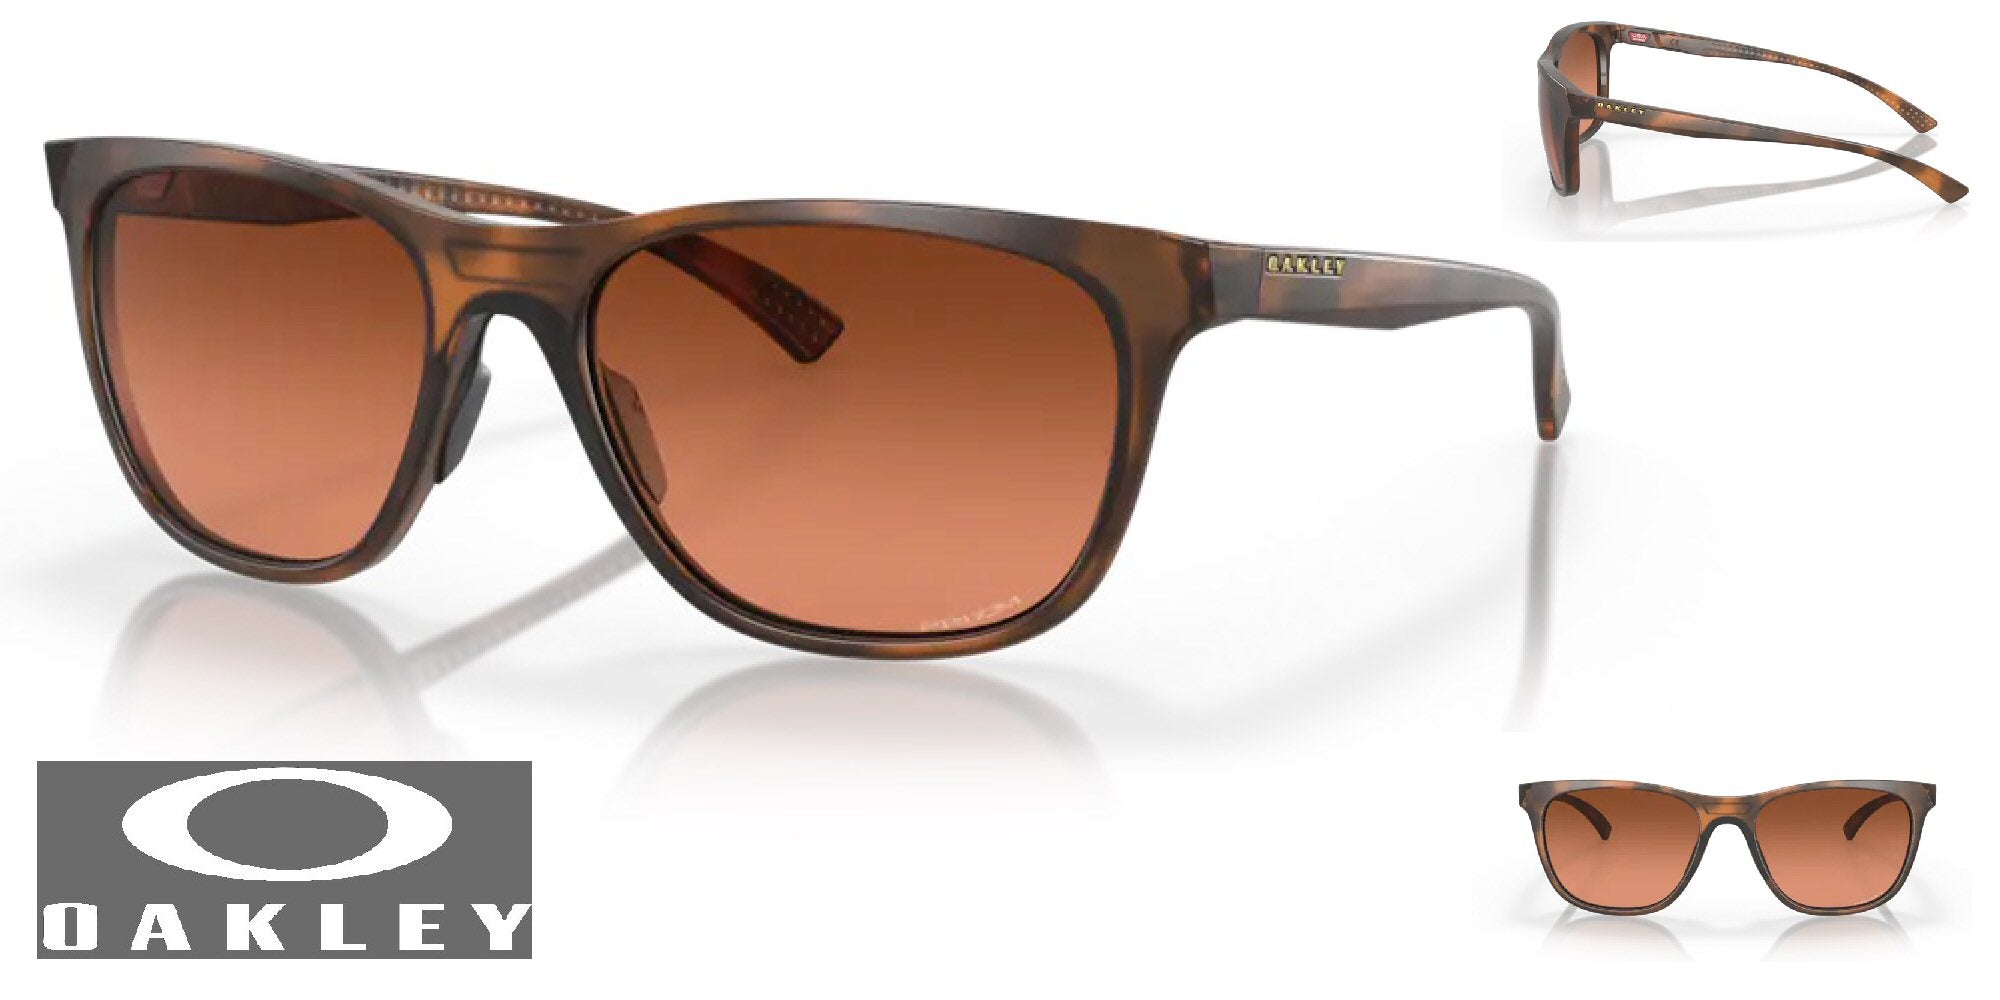 Oakley Leadline Women's Sunglasses - Matte Brown Tortoise Frame/Prizm Brown Gradient Lenses